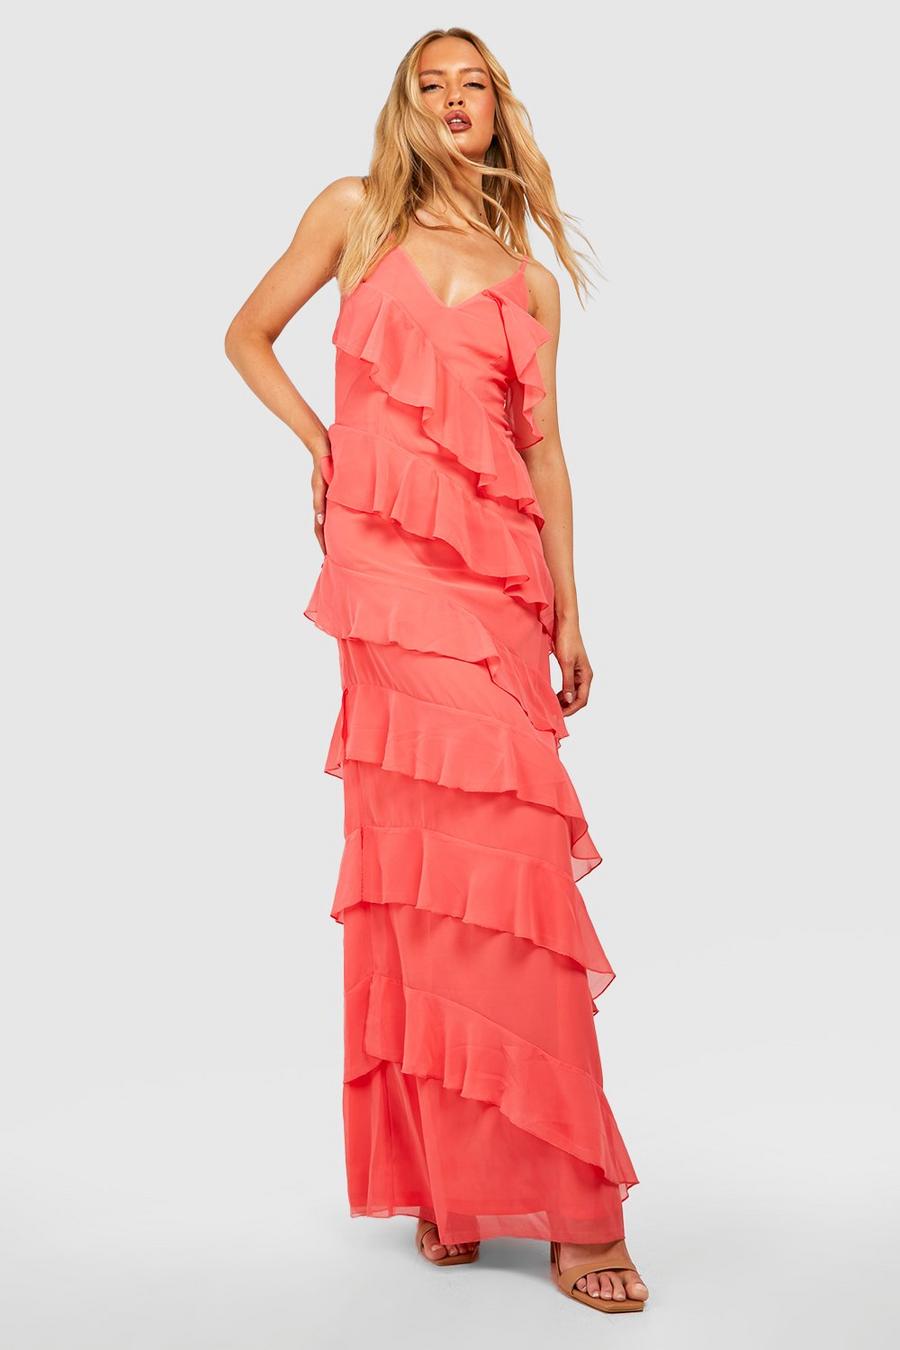 Coral blush pink Tall Chiffon Ruffle Detail Maxi Dress